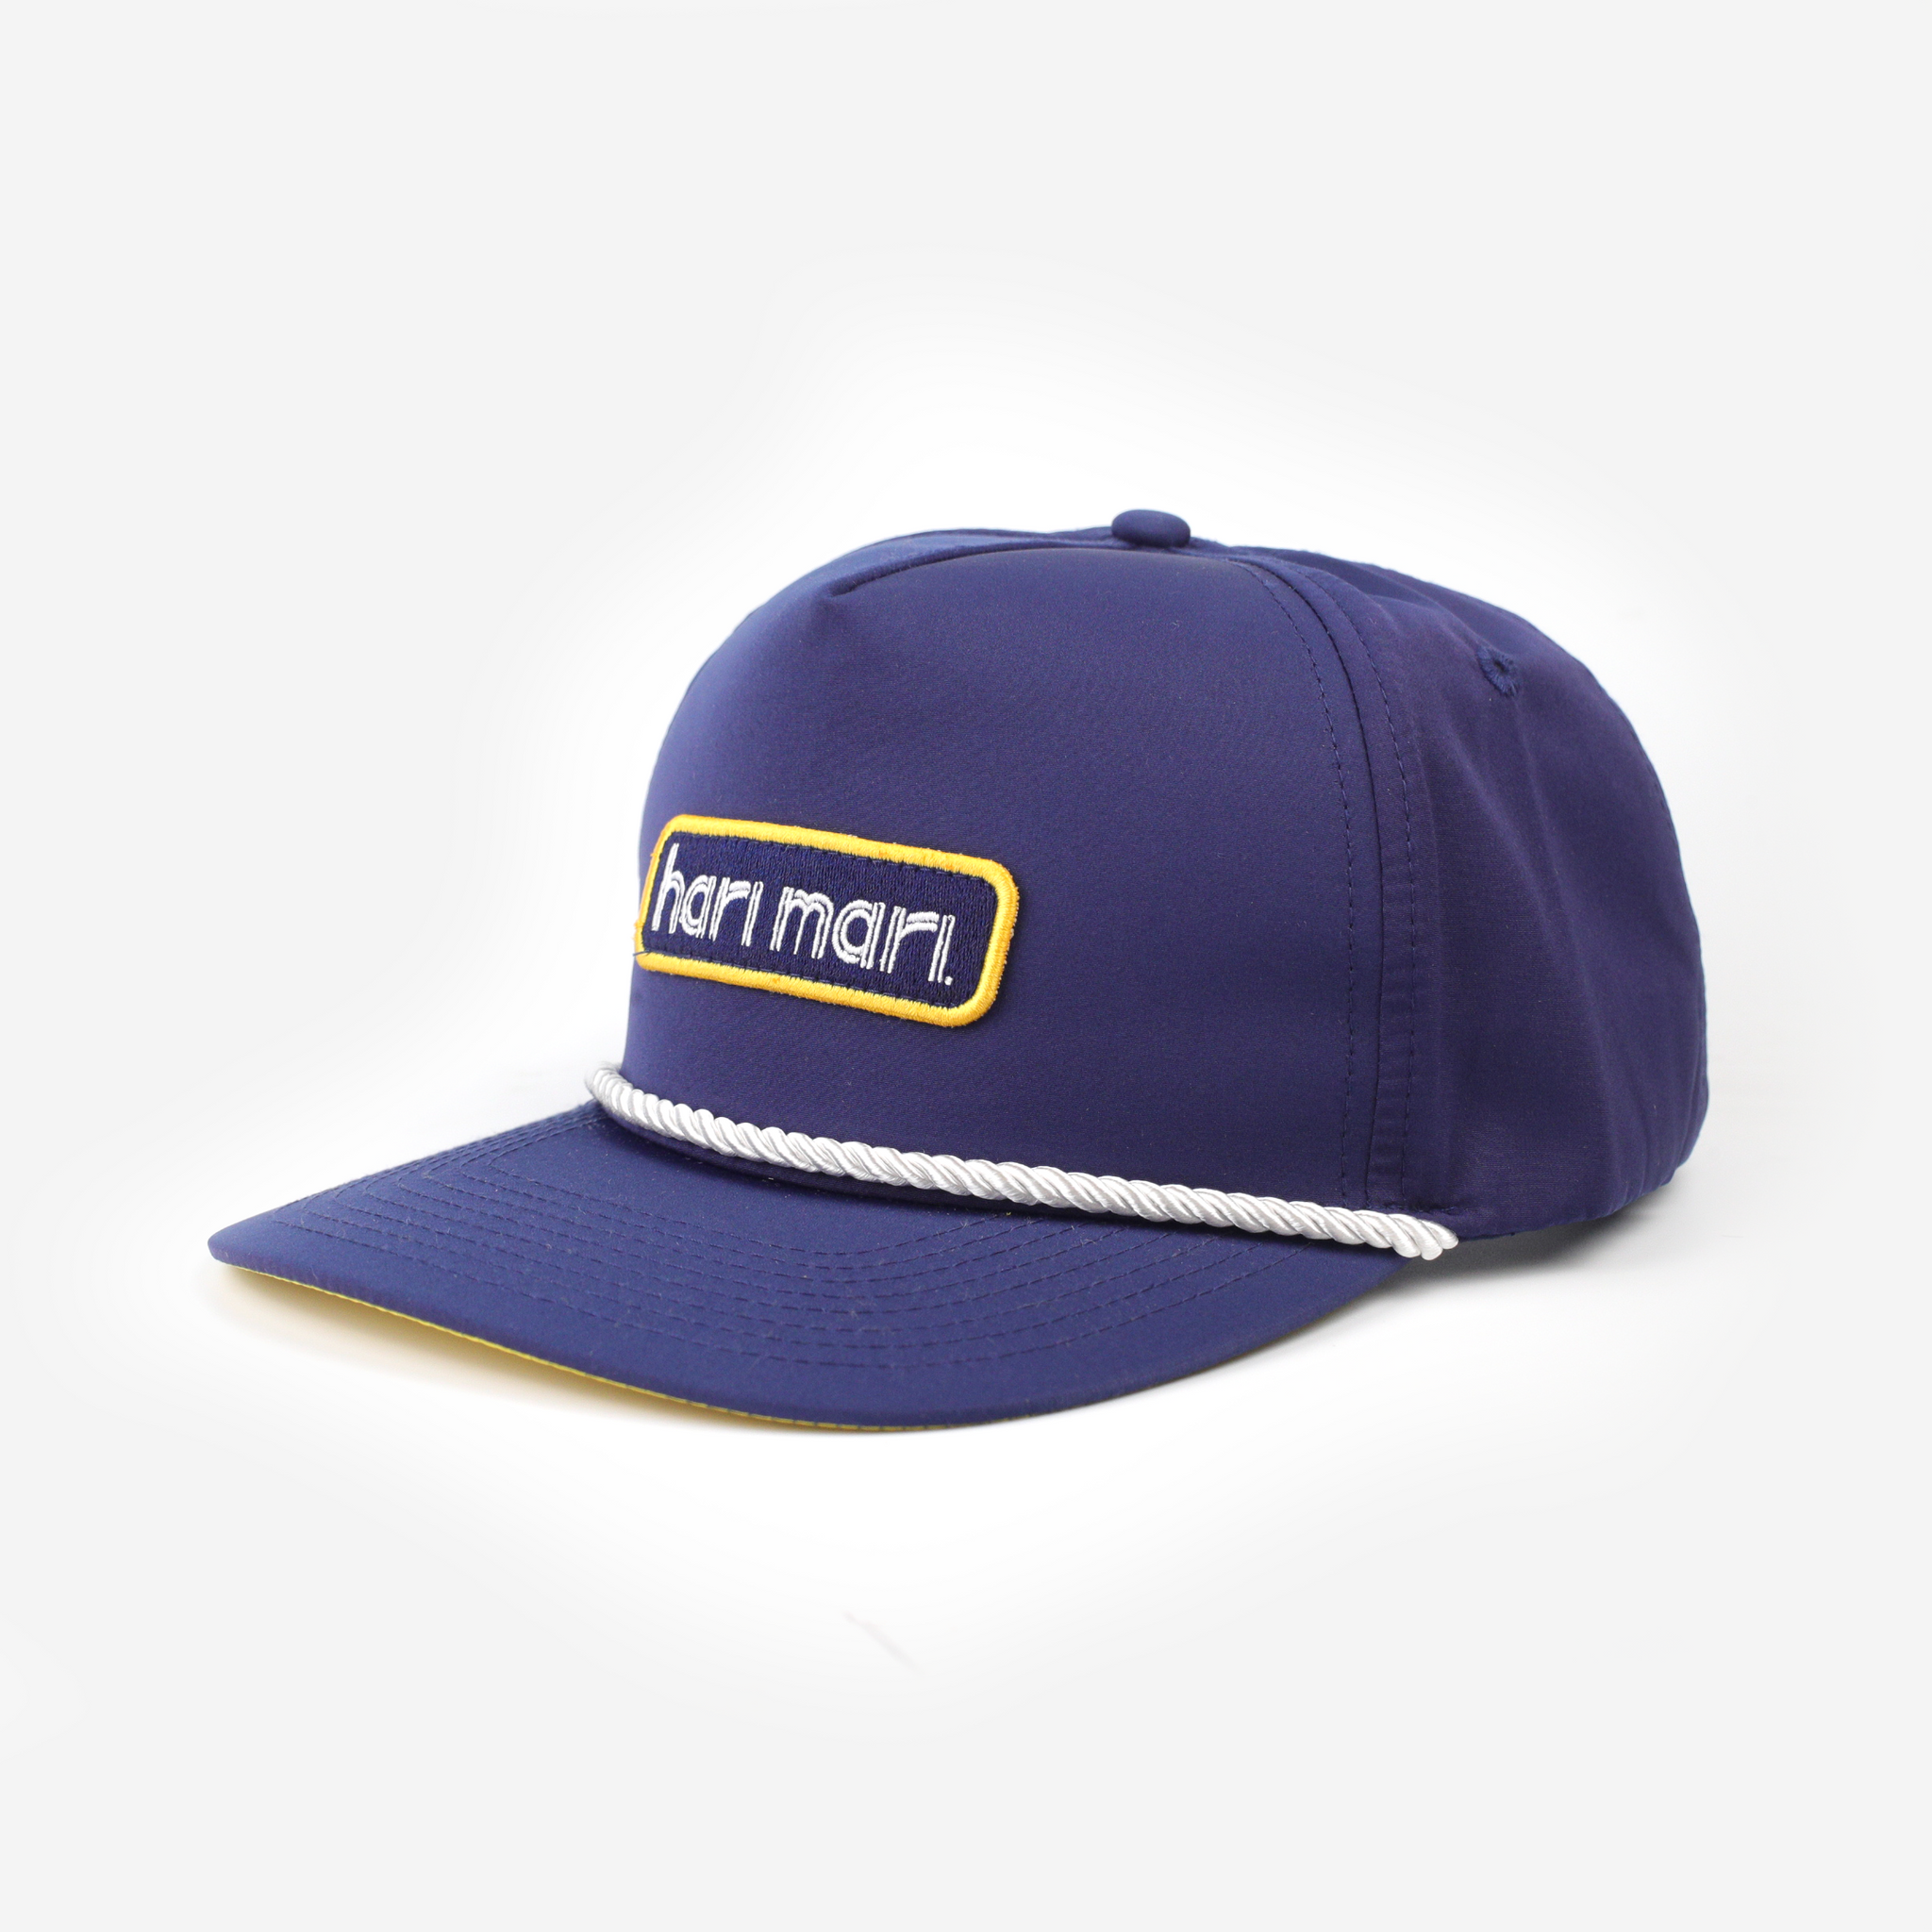 The OG Hat | Navy